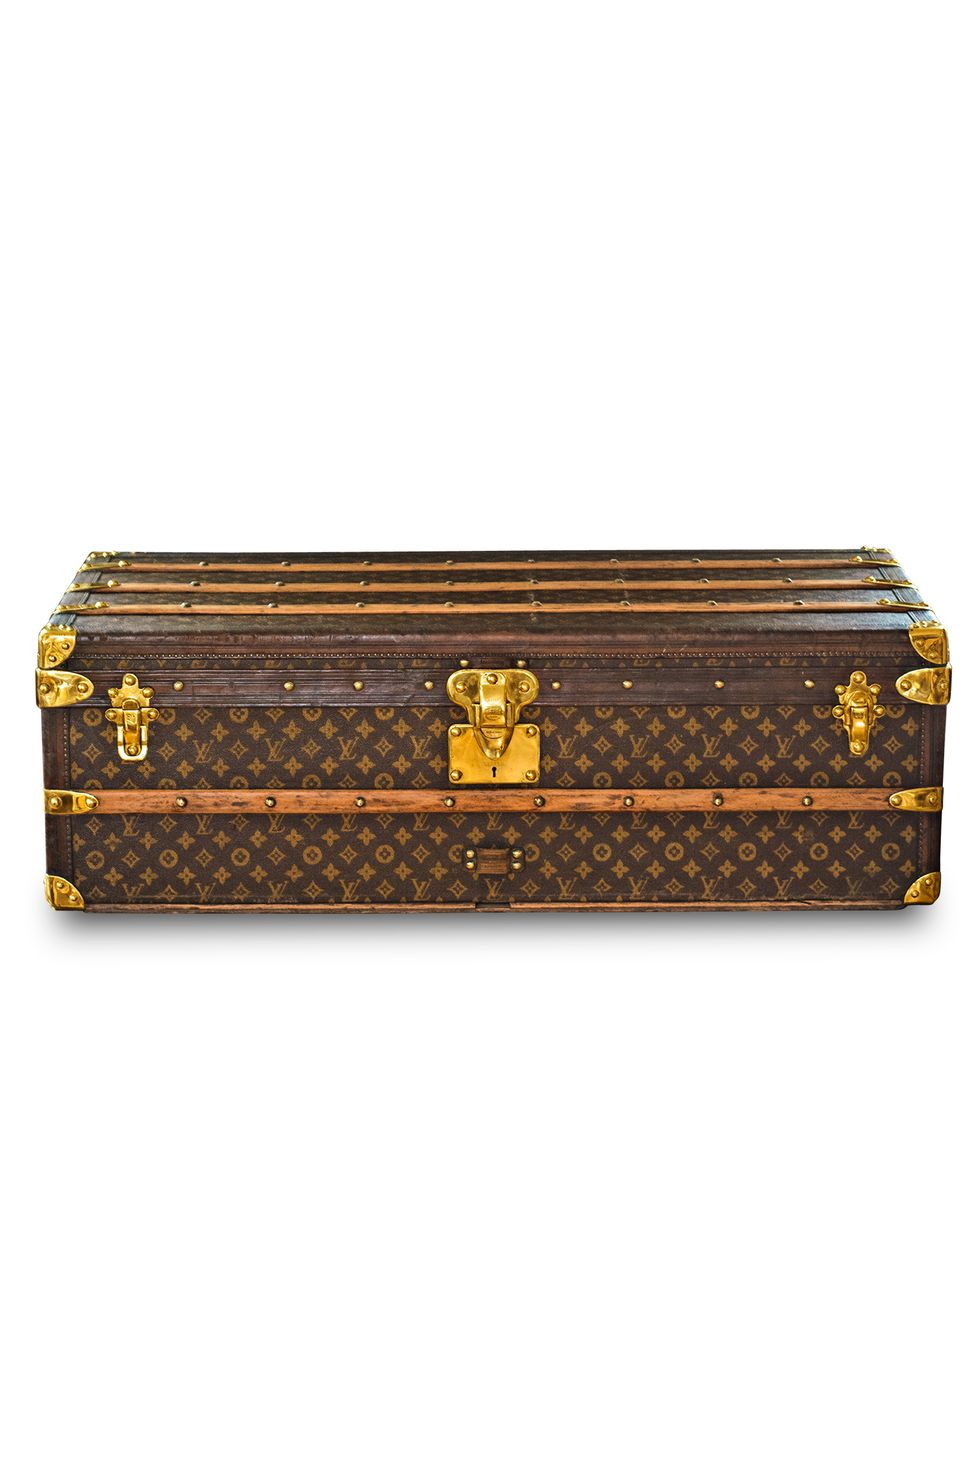 Louis Vuitton Storage Boxes Vintage Home decor Boxes